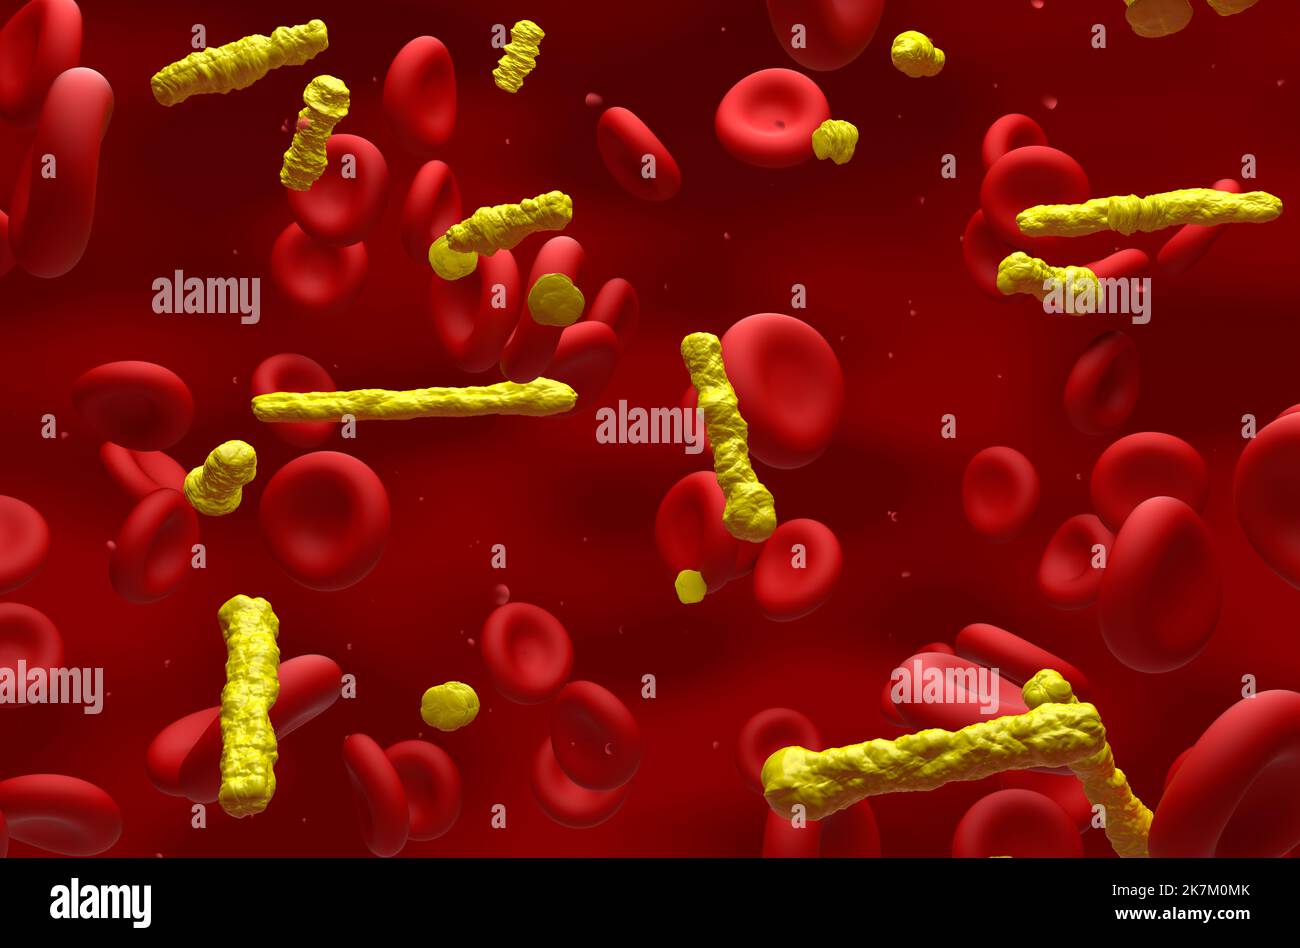 Cristalli di colesterolo nel flusso sanguigno - vista isometrica 3D illustrazione Foto Stock